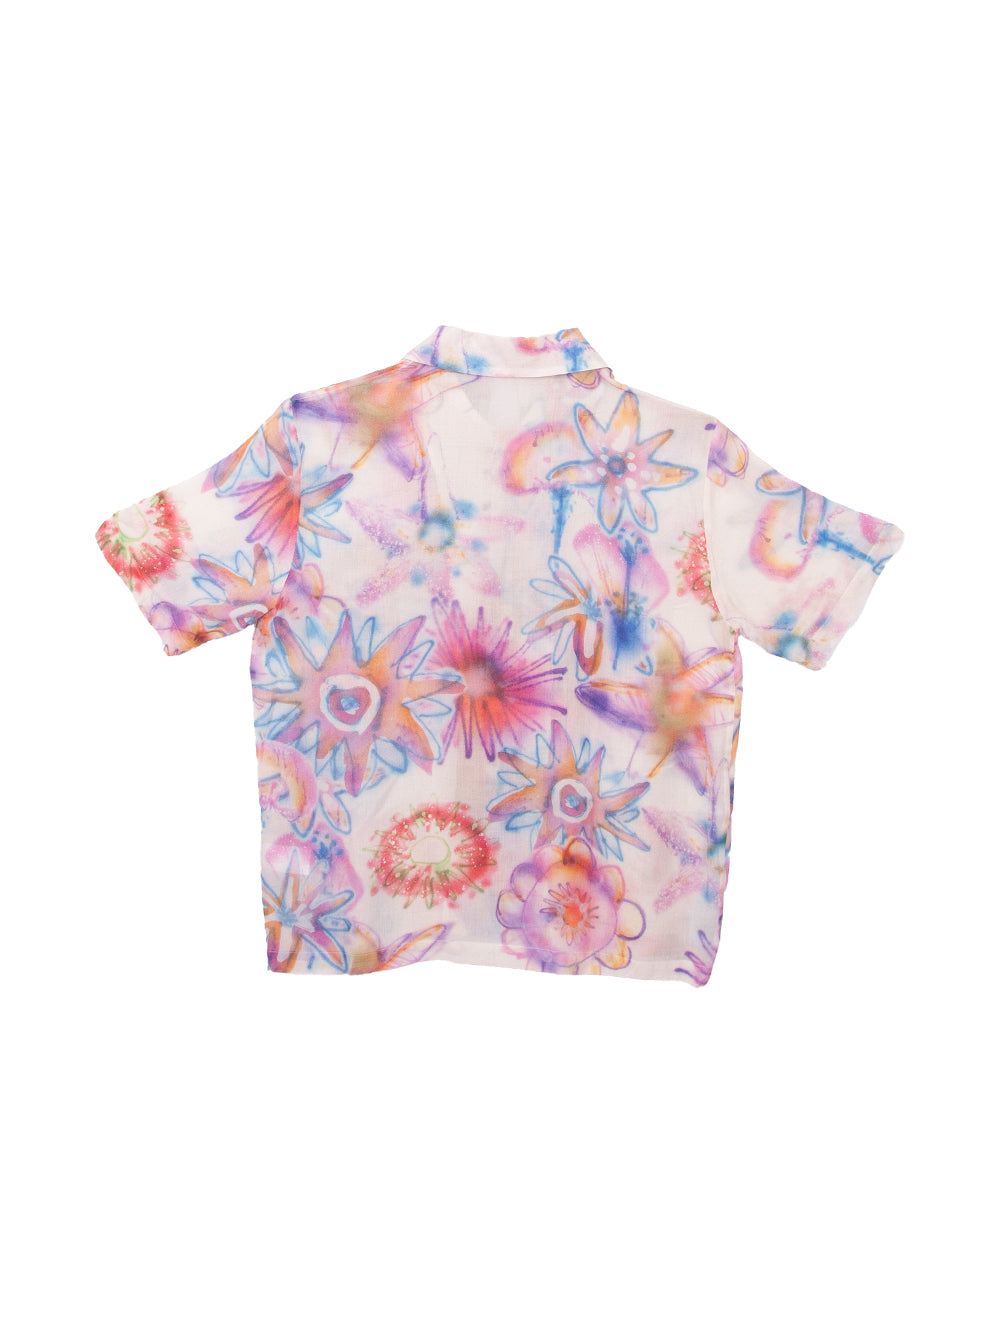 Quadro Acid Flowers shirt